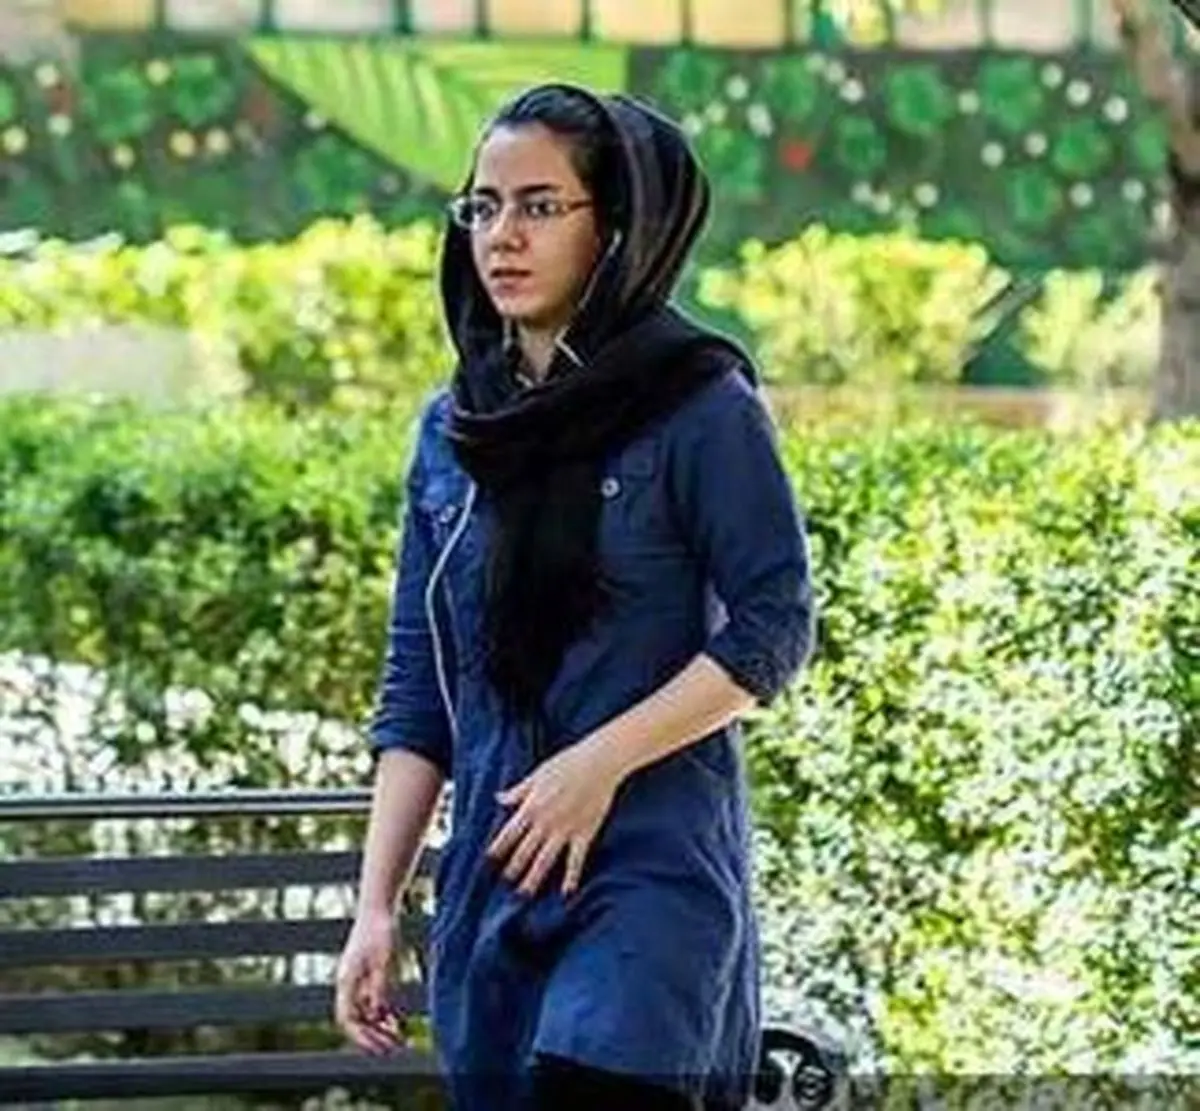 دلایل ظهور برخی ازدختران ایرانی با چهره خاص در فضای مجازی